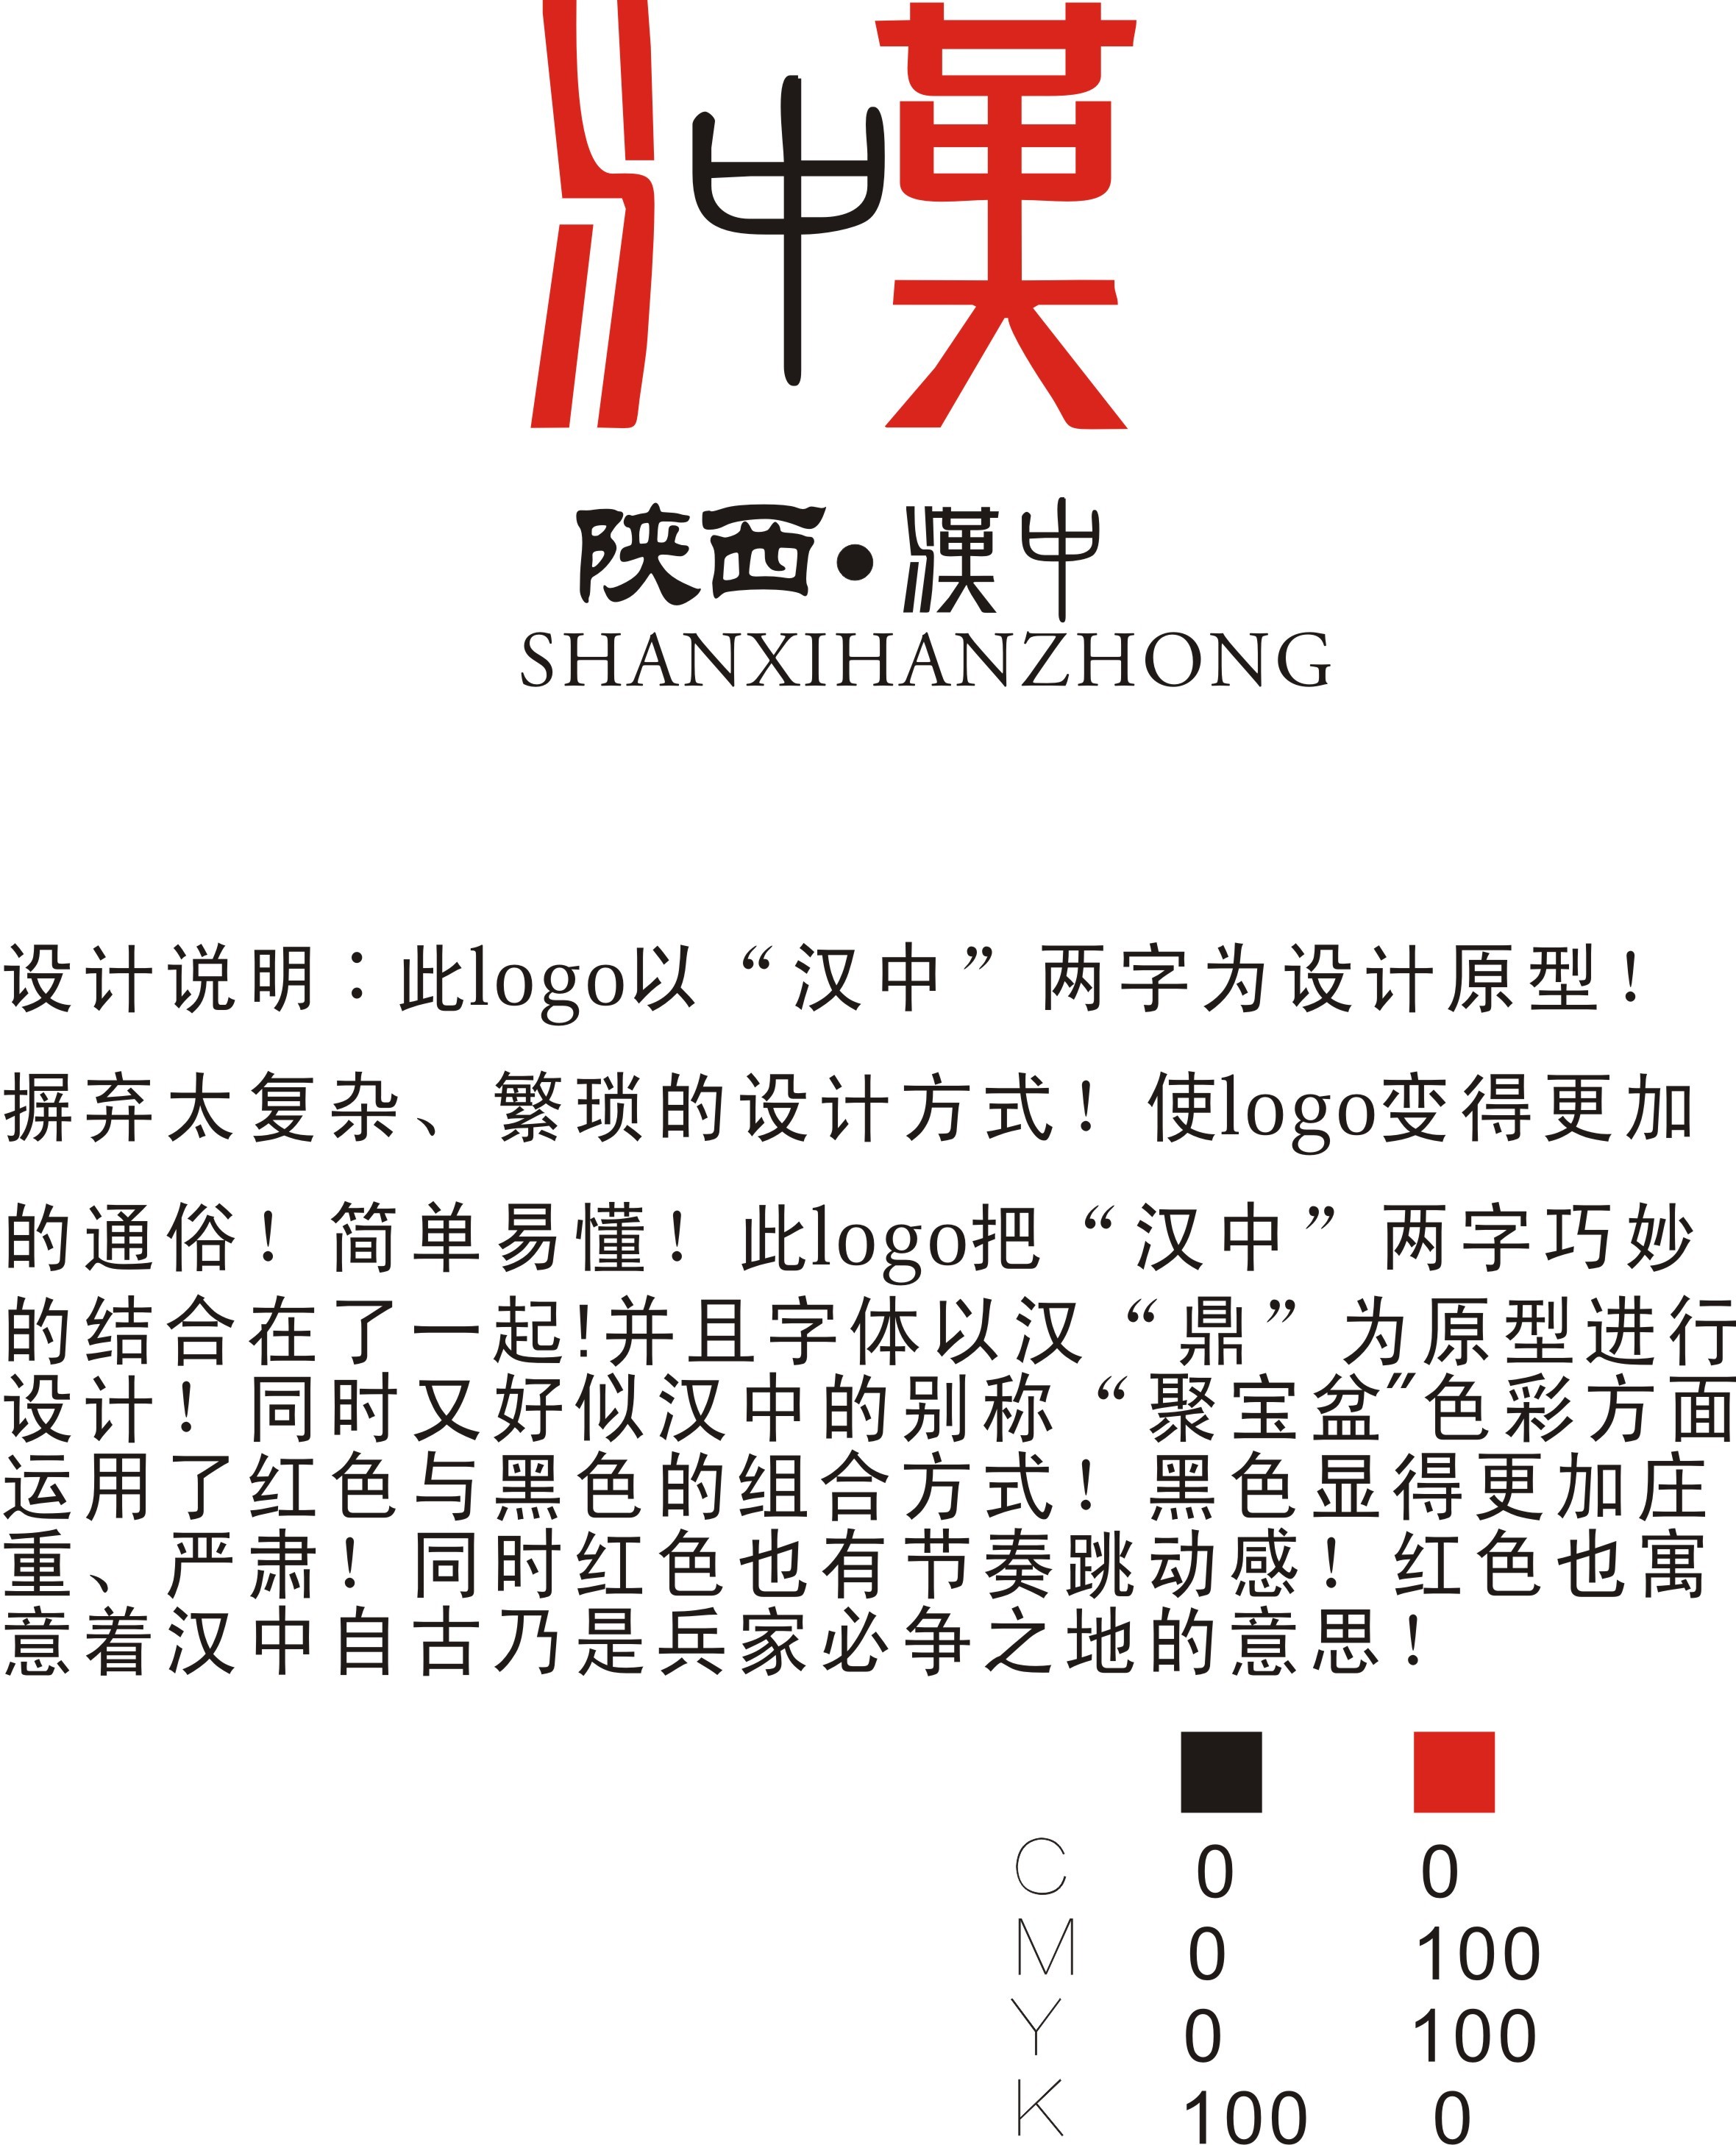 汉中博物馆logo图片